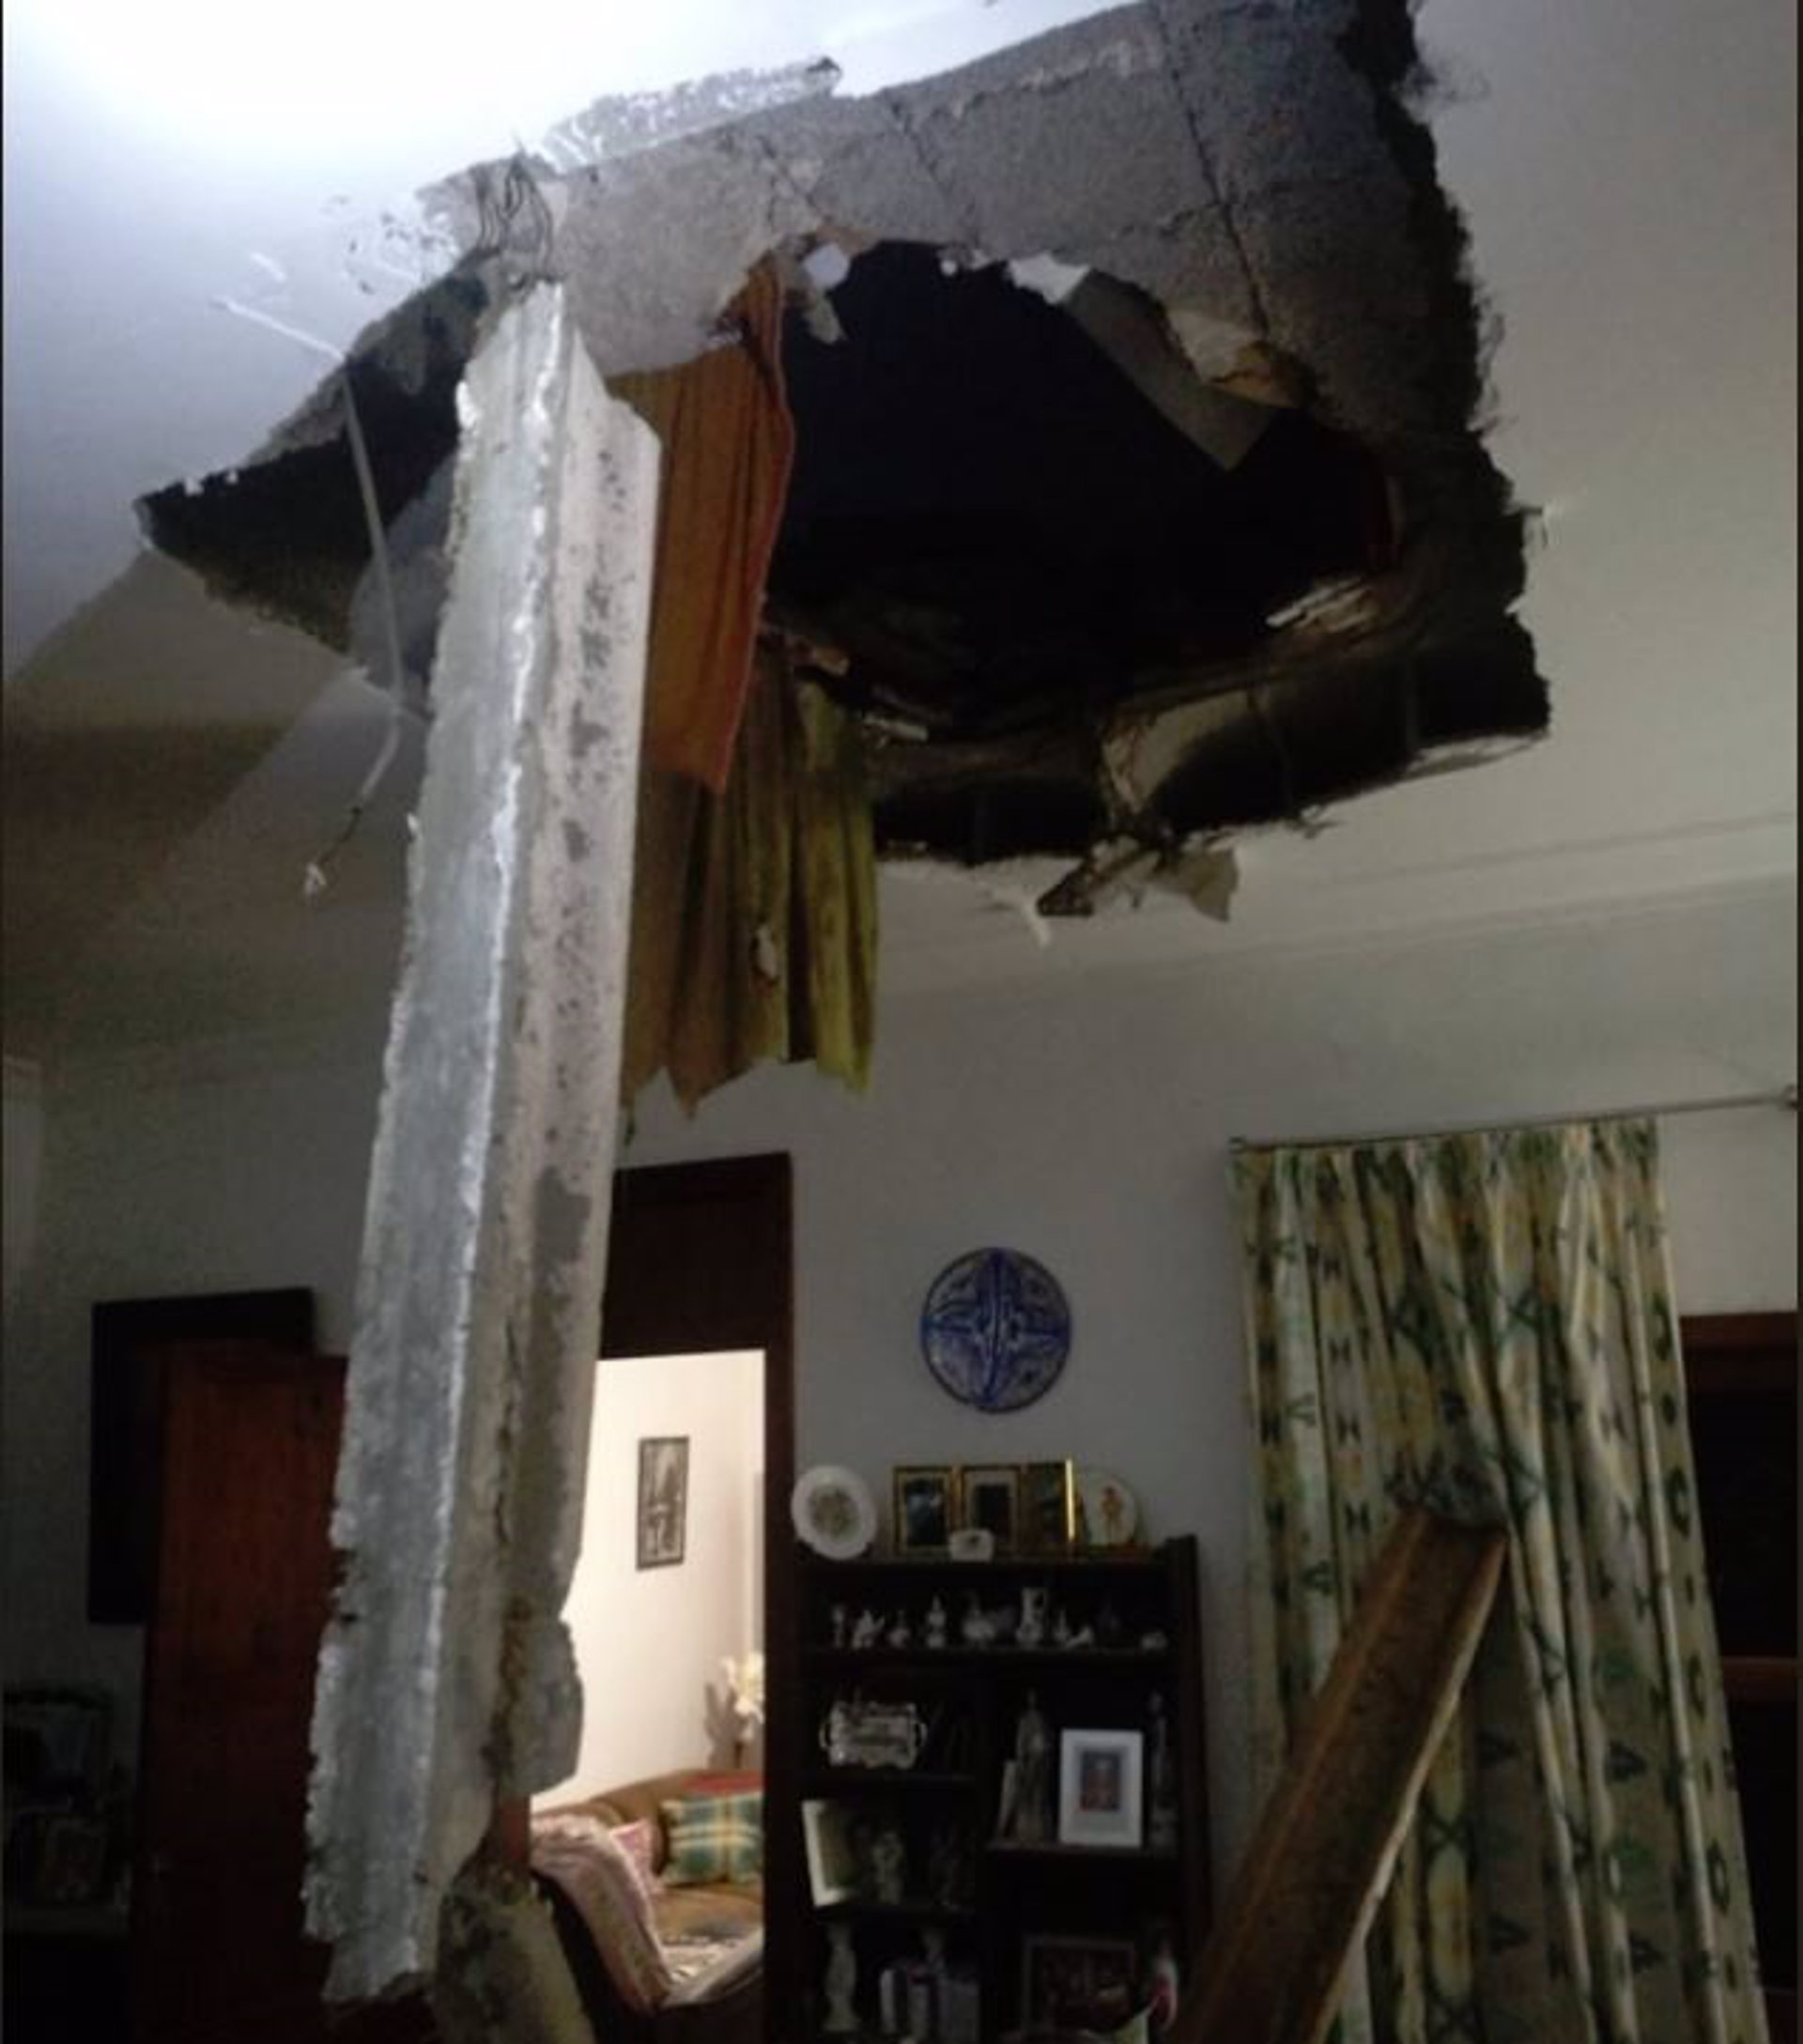 Desalojan a una familia de una vivienda de Palma tras derrumbarse el techo por las fuertes lluvias